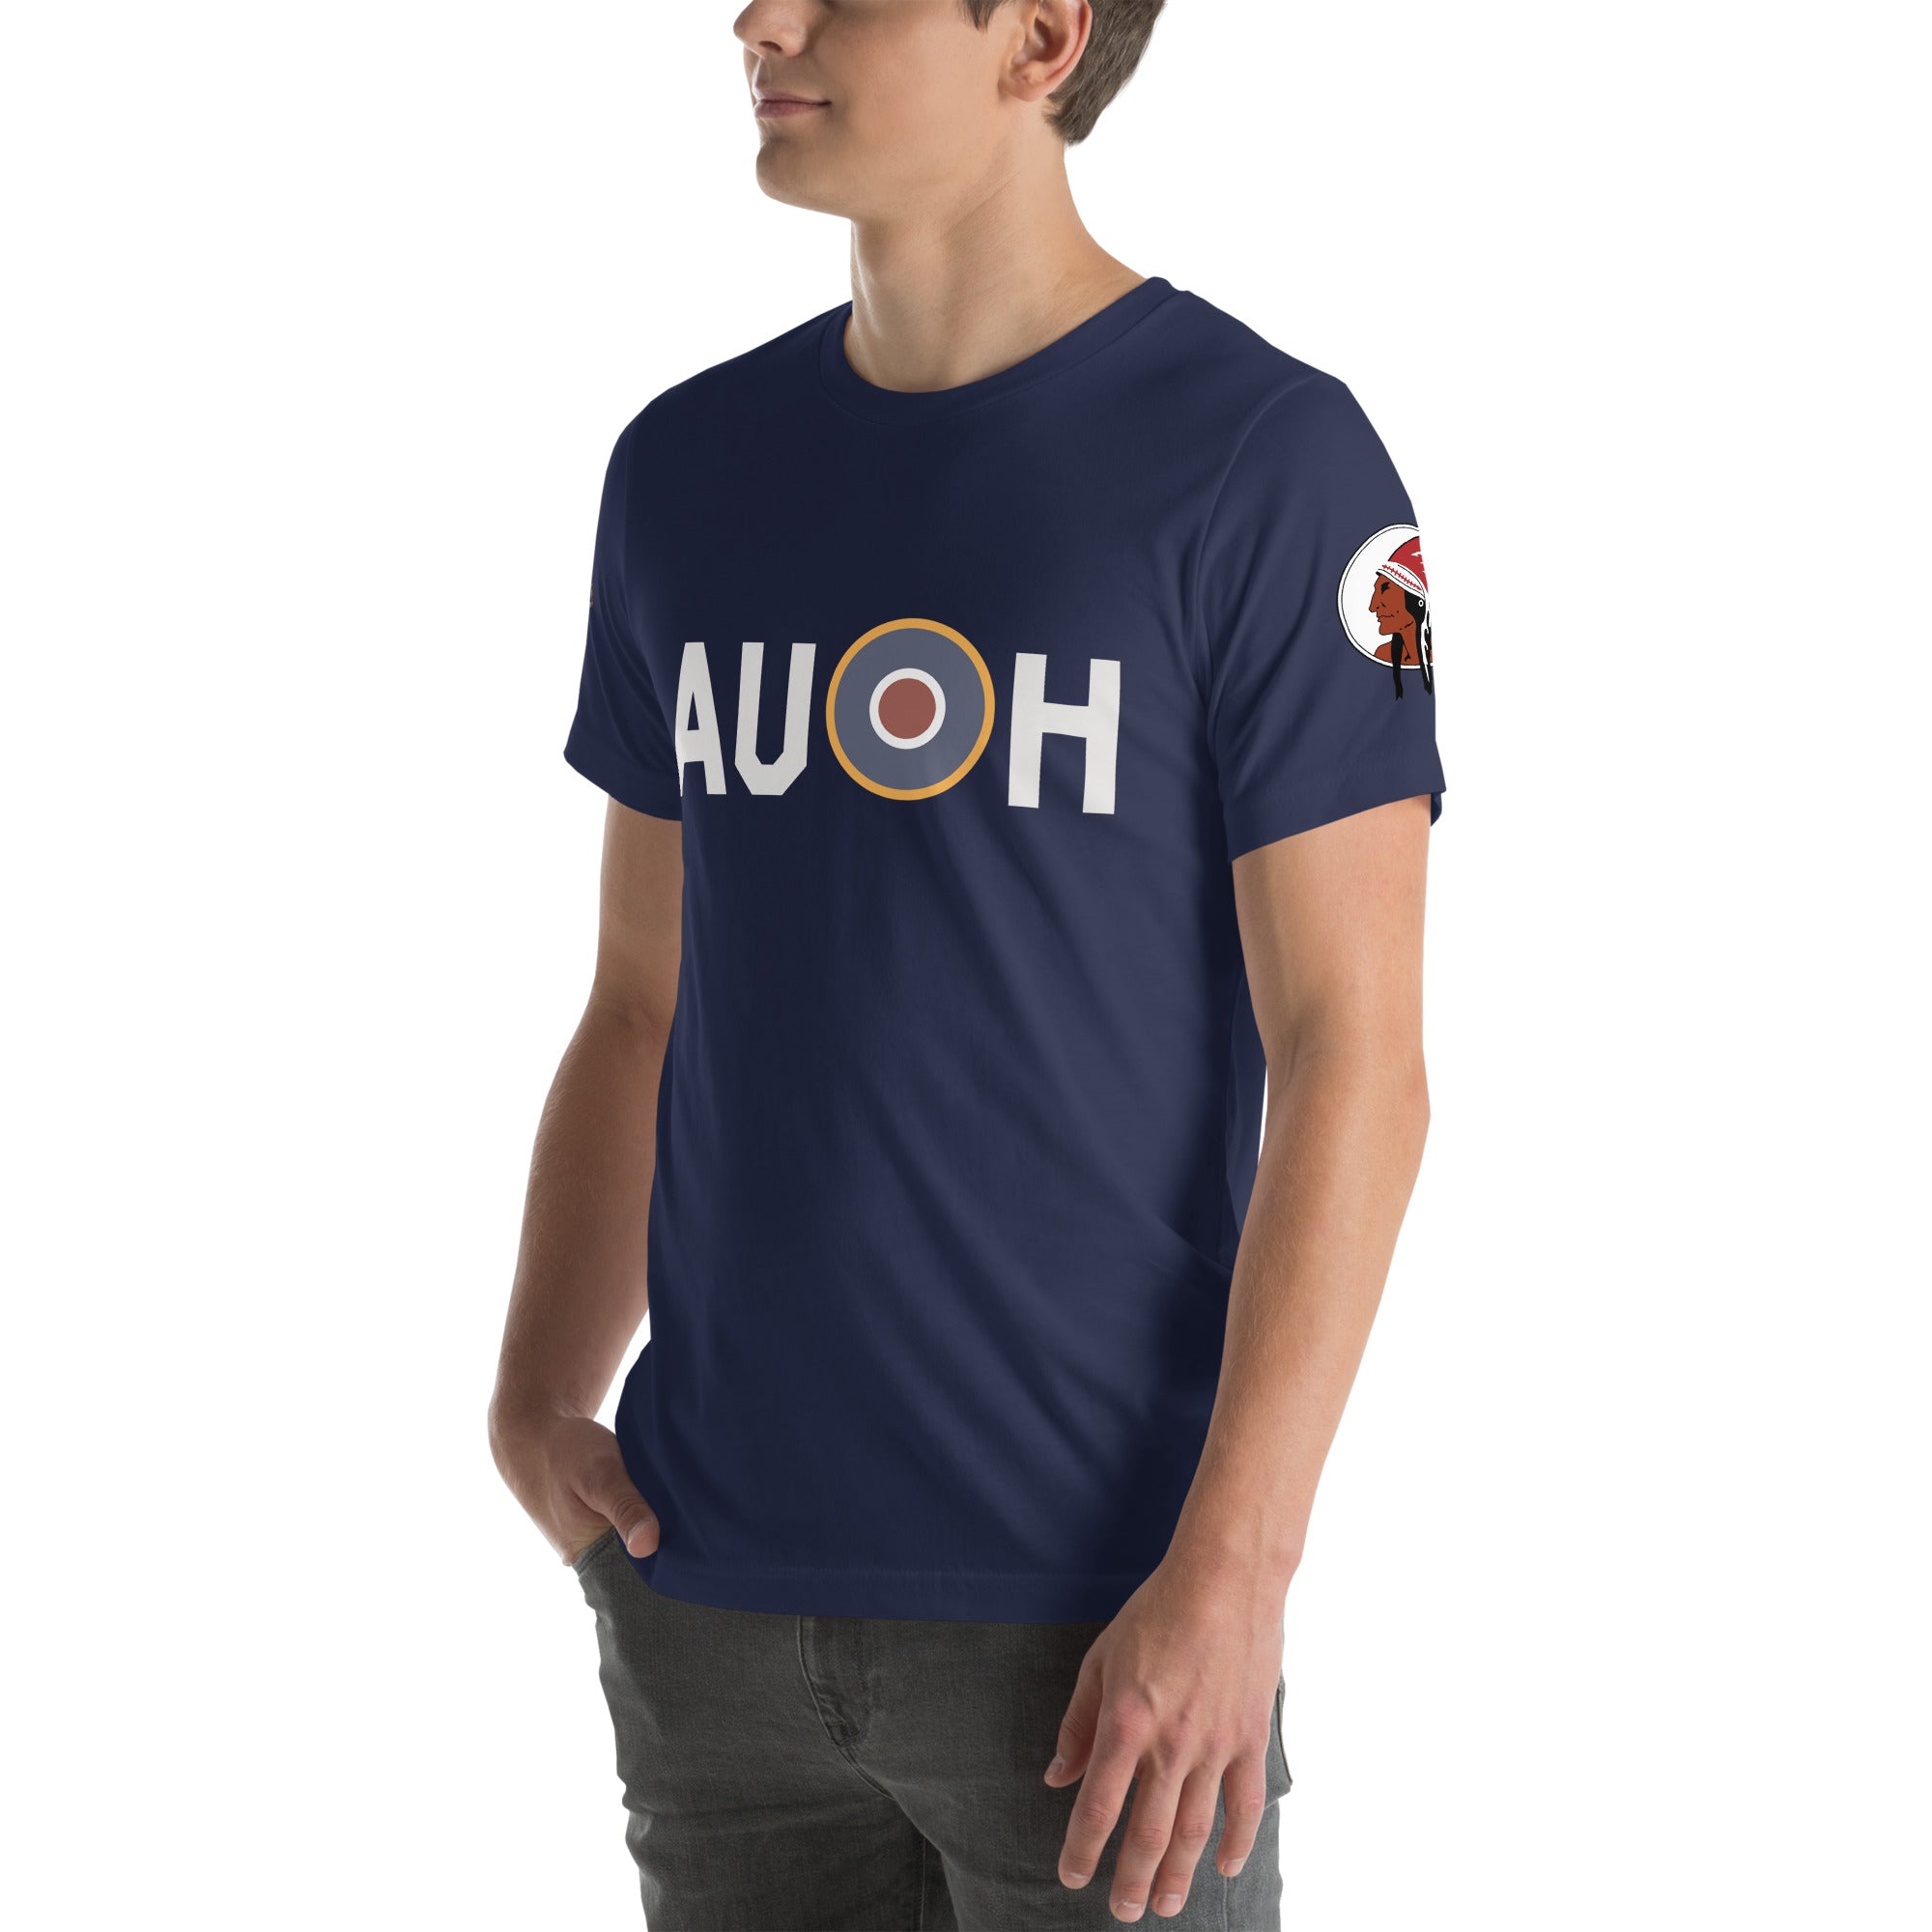 Spitfire "HU-A" Unisex t-shirt - I Love a Hangar